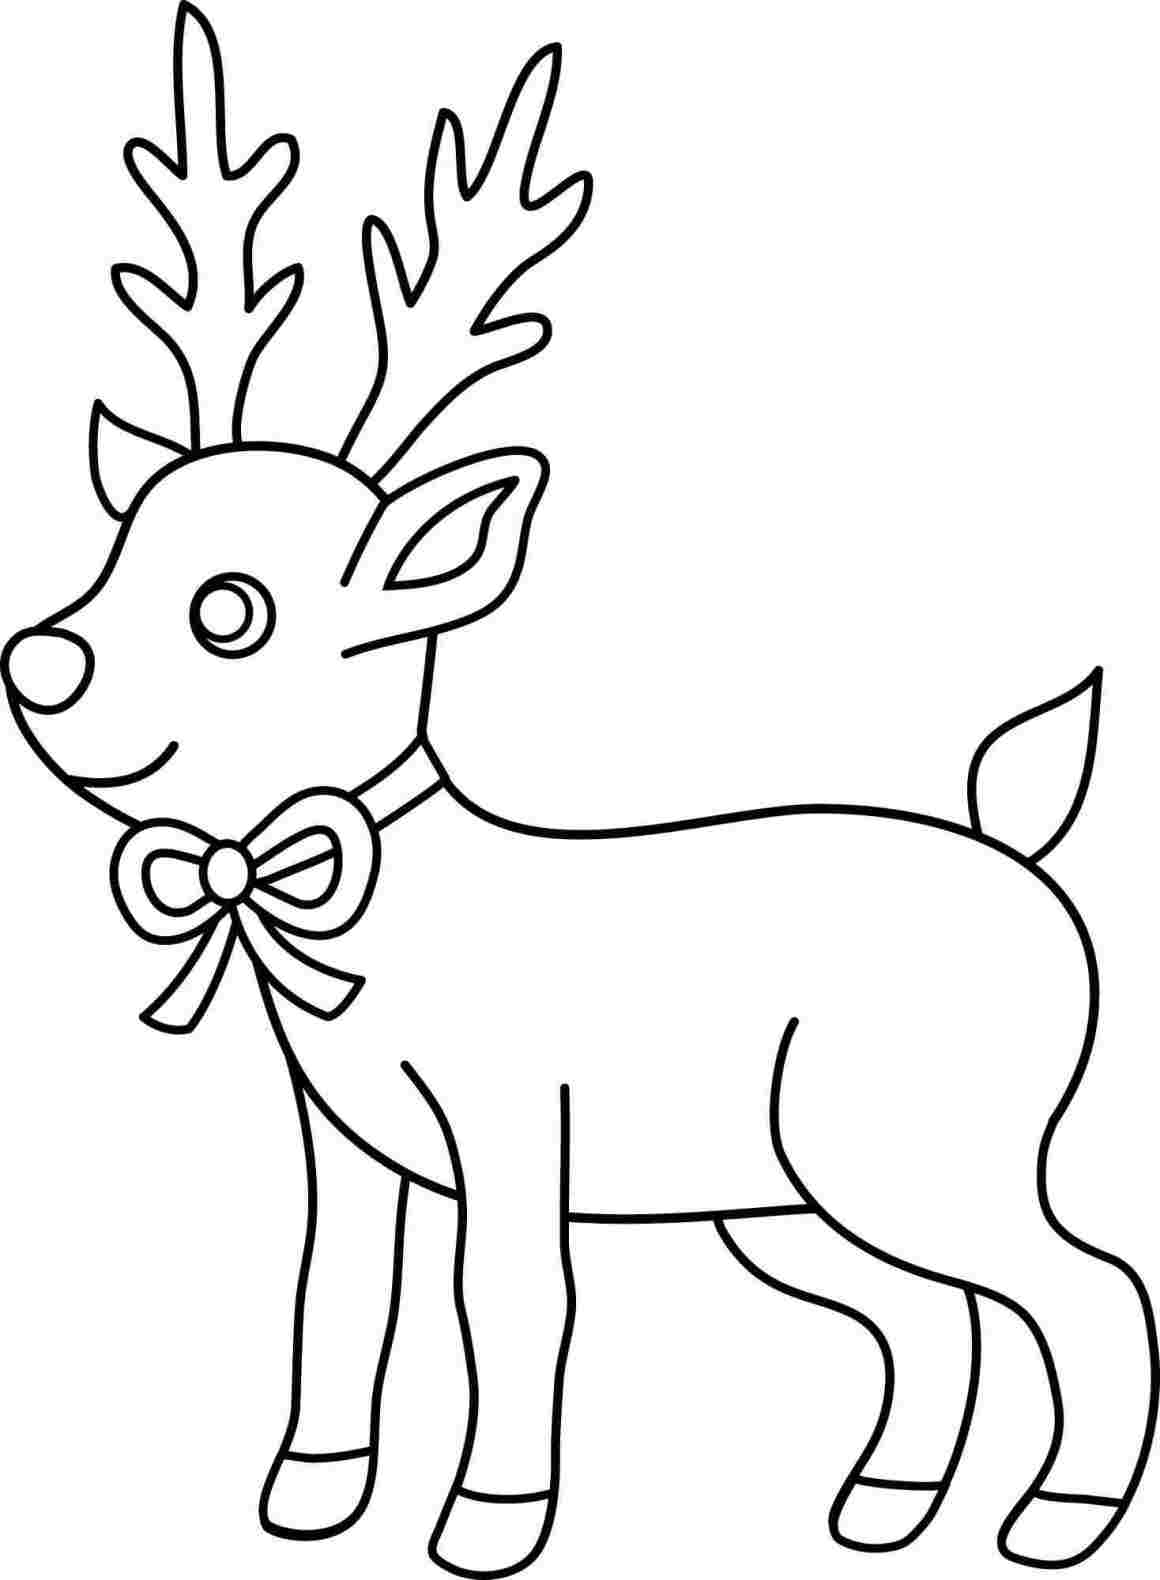 Hand drawn head deer reindeer christmas xmas Vector Image